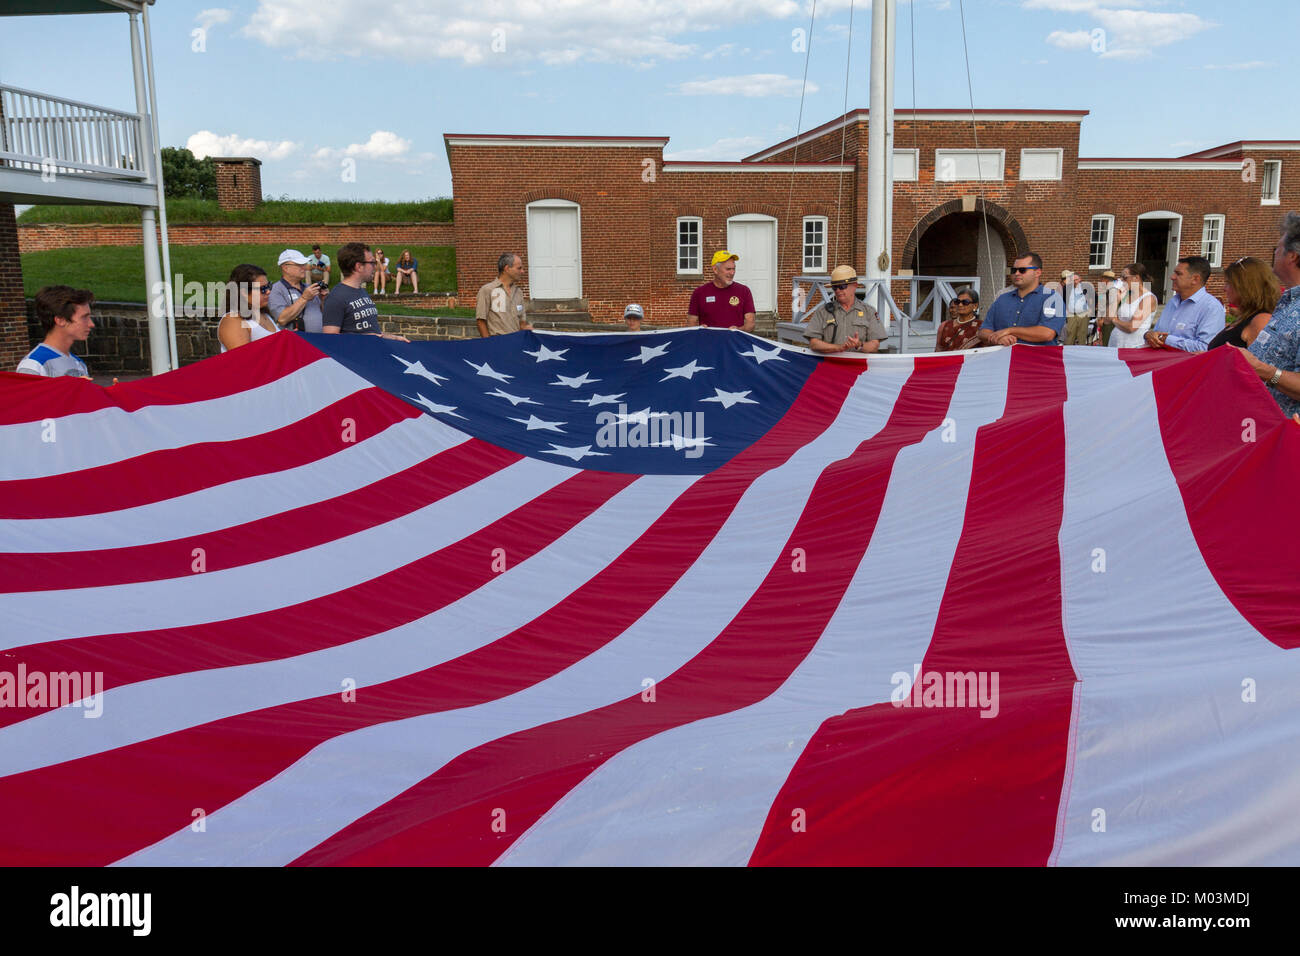 Die 15 Sterne, 15 - der Streifen Teer - Spangled Banner" von den Besuchern Fort McHenry, Baltimore, Maryland, USA gefaltet wird. Stockfoto